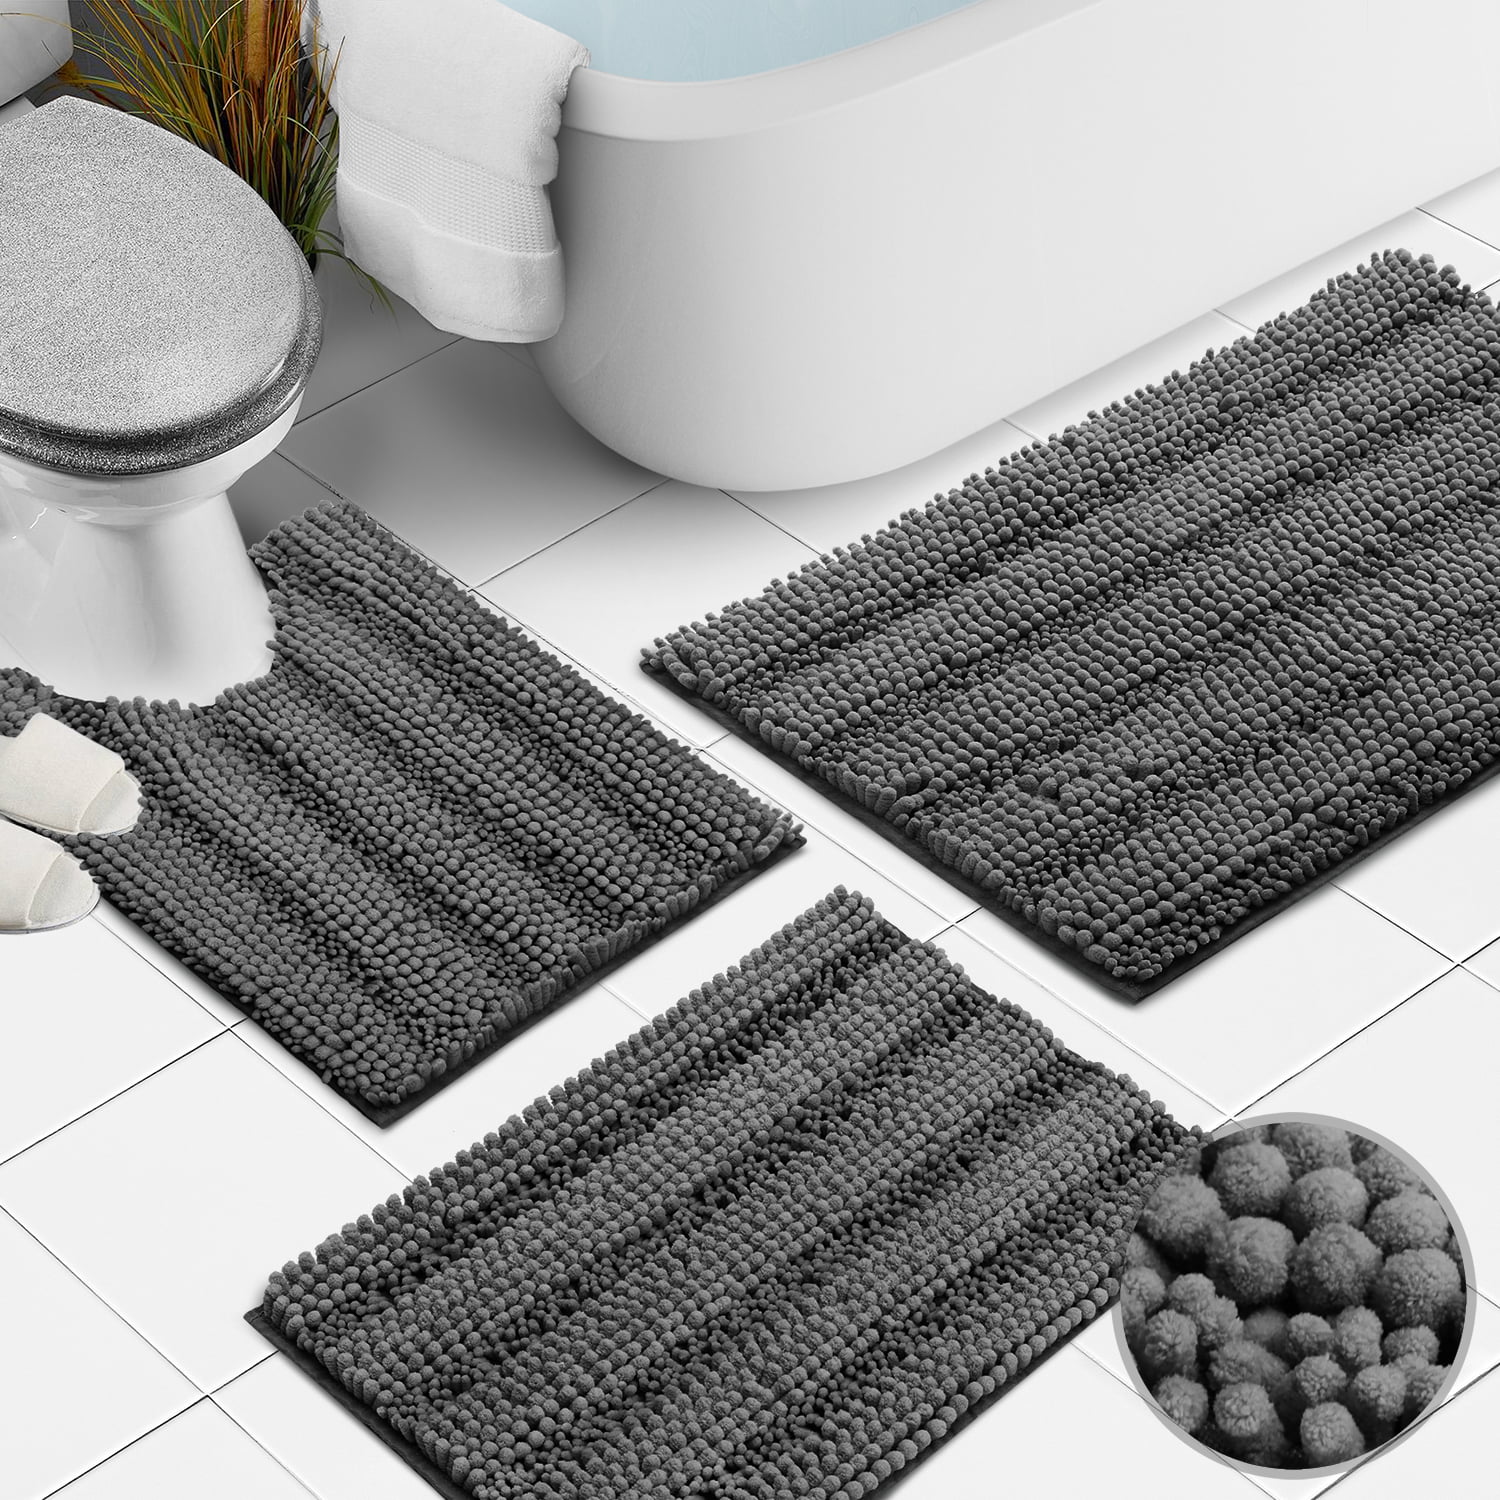 Details about   Chenille Super Absorbent Bathroom Rug Set